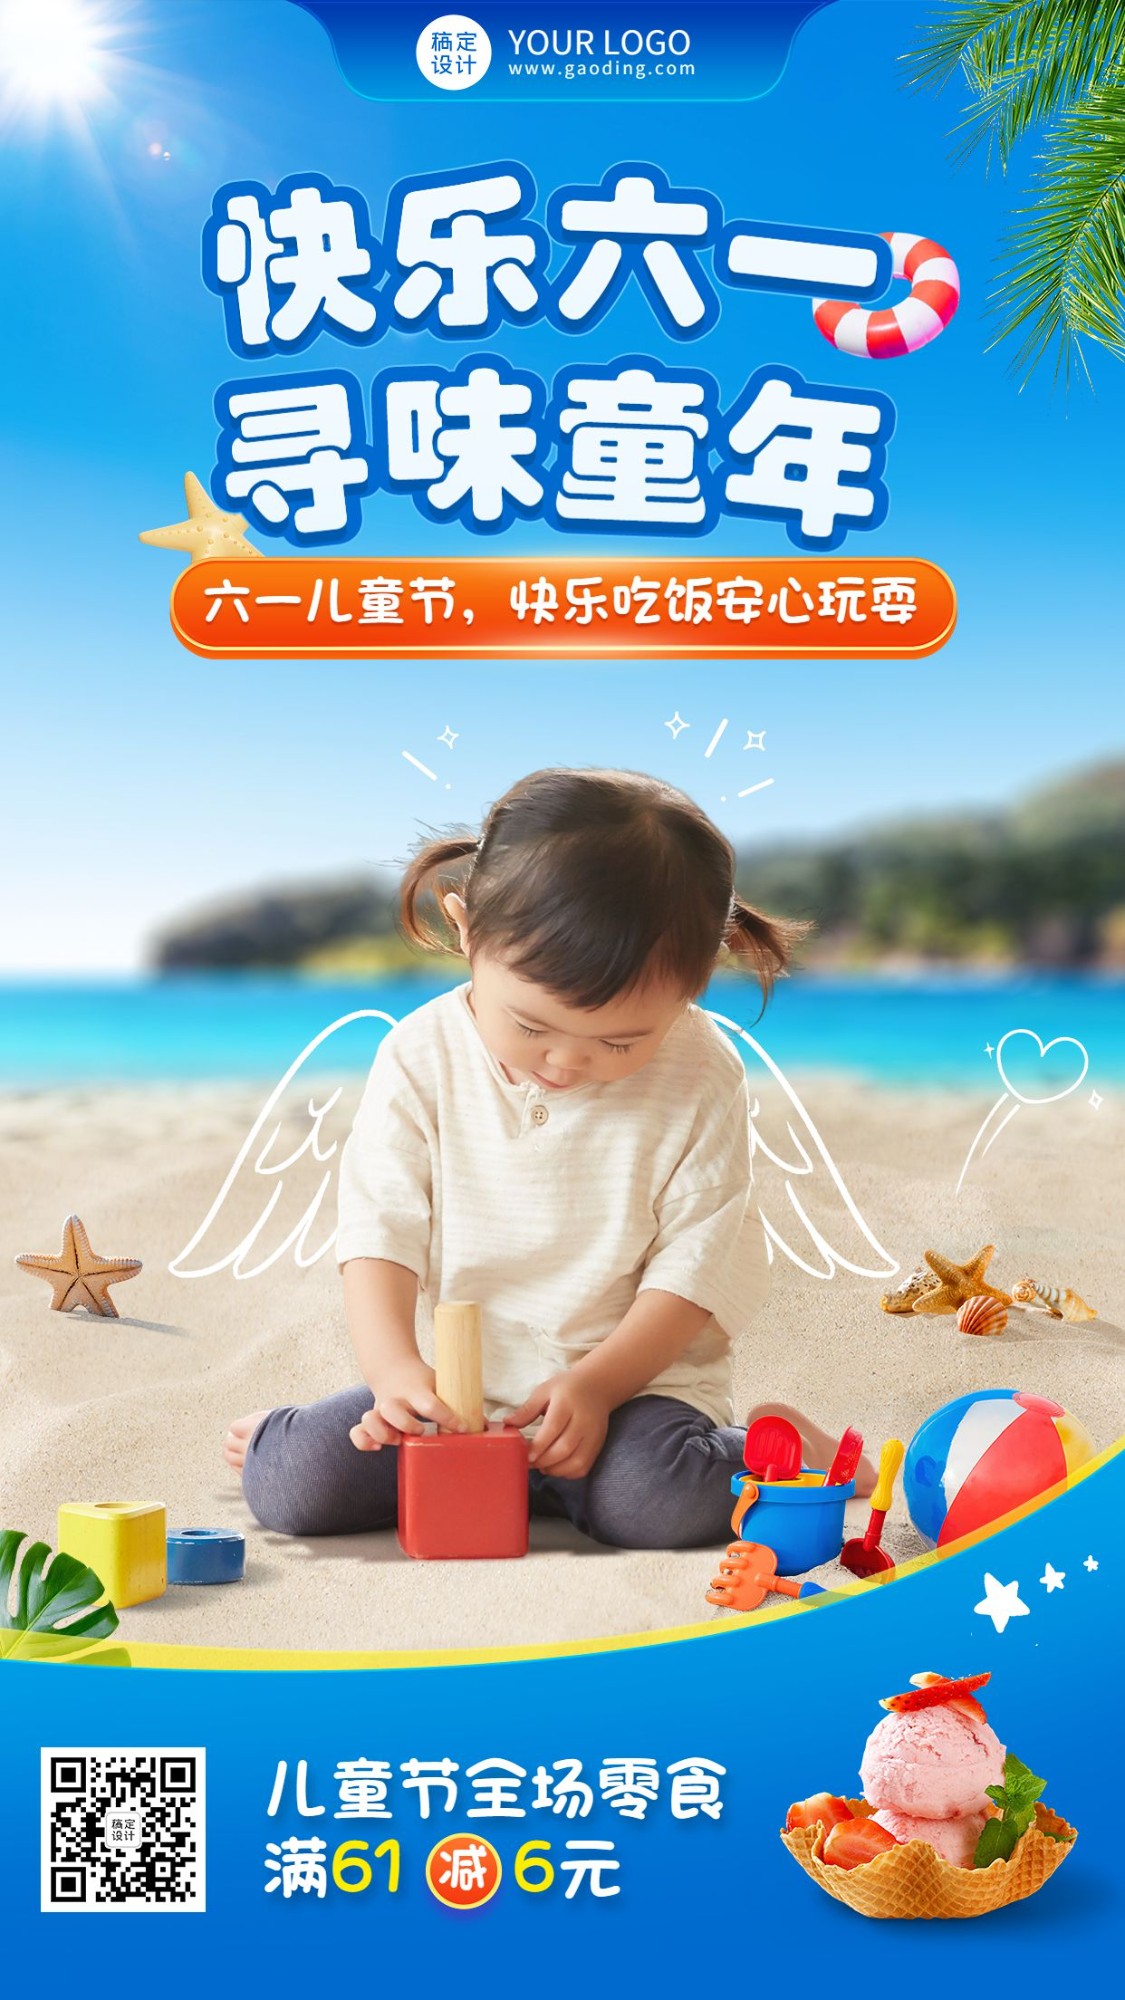 六一儿童节节日祝福实景合成手机海报